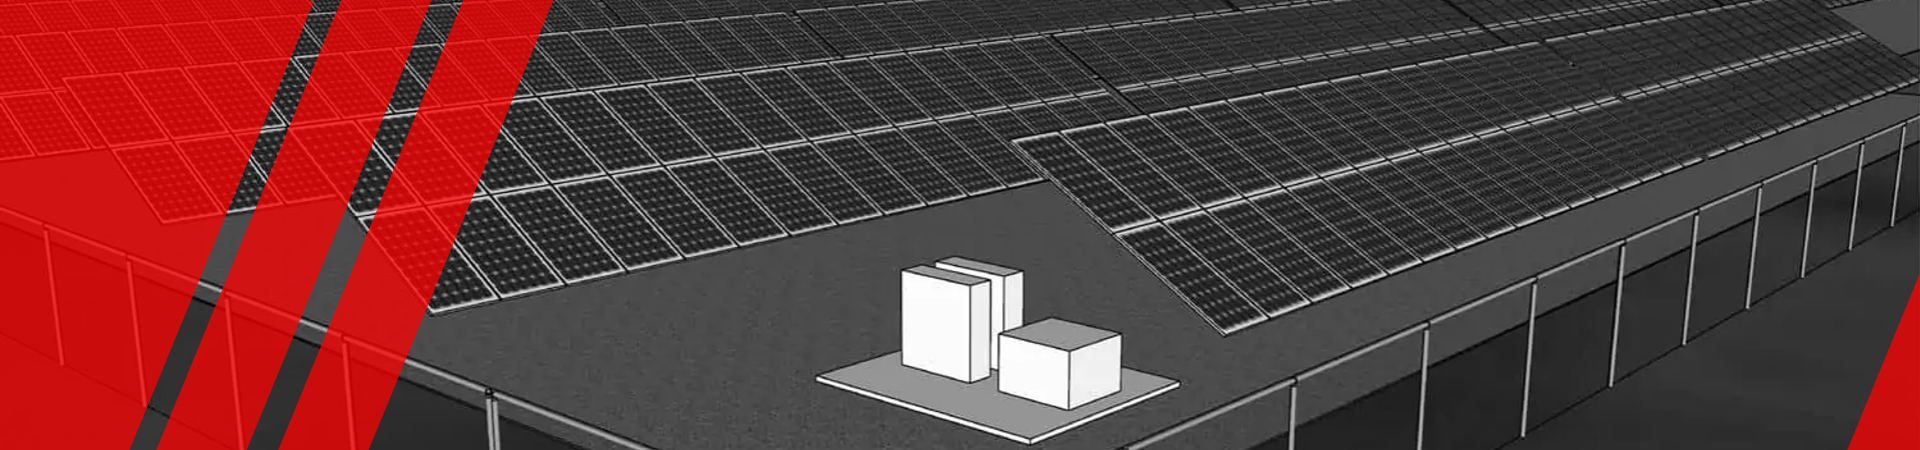 Моделювання сонячних електростанцій від компанії Авенстон